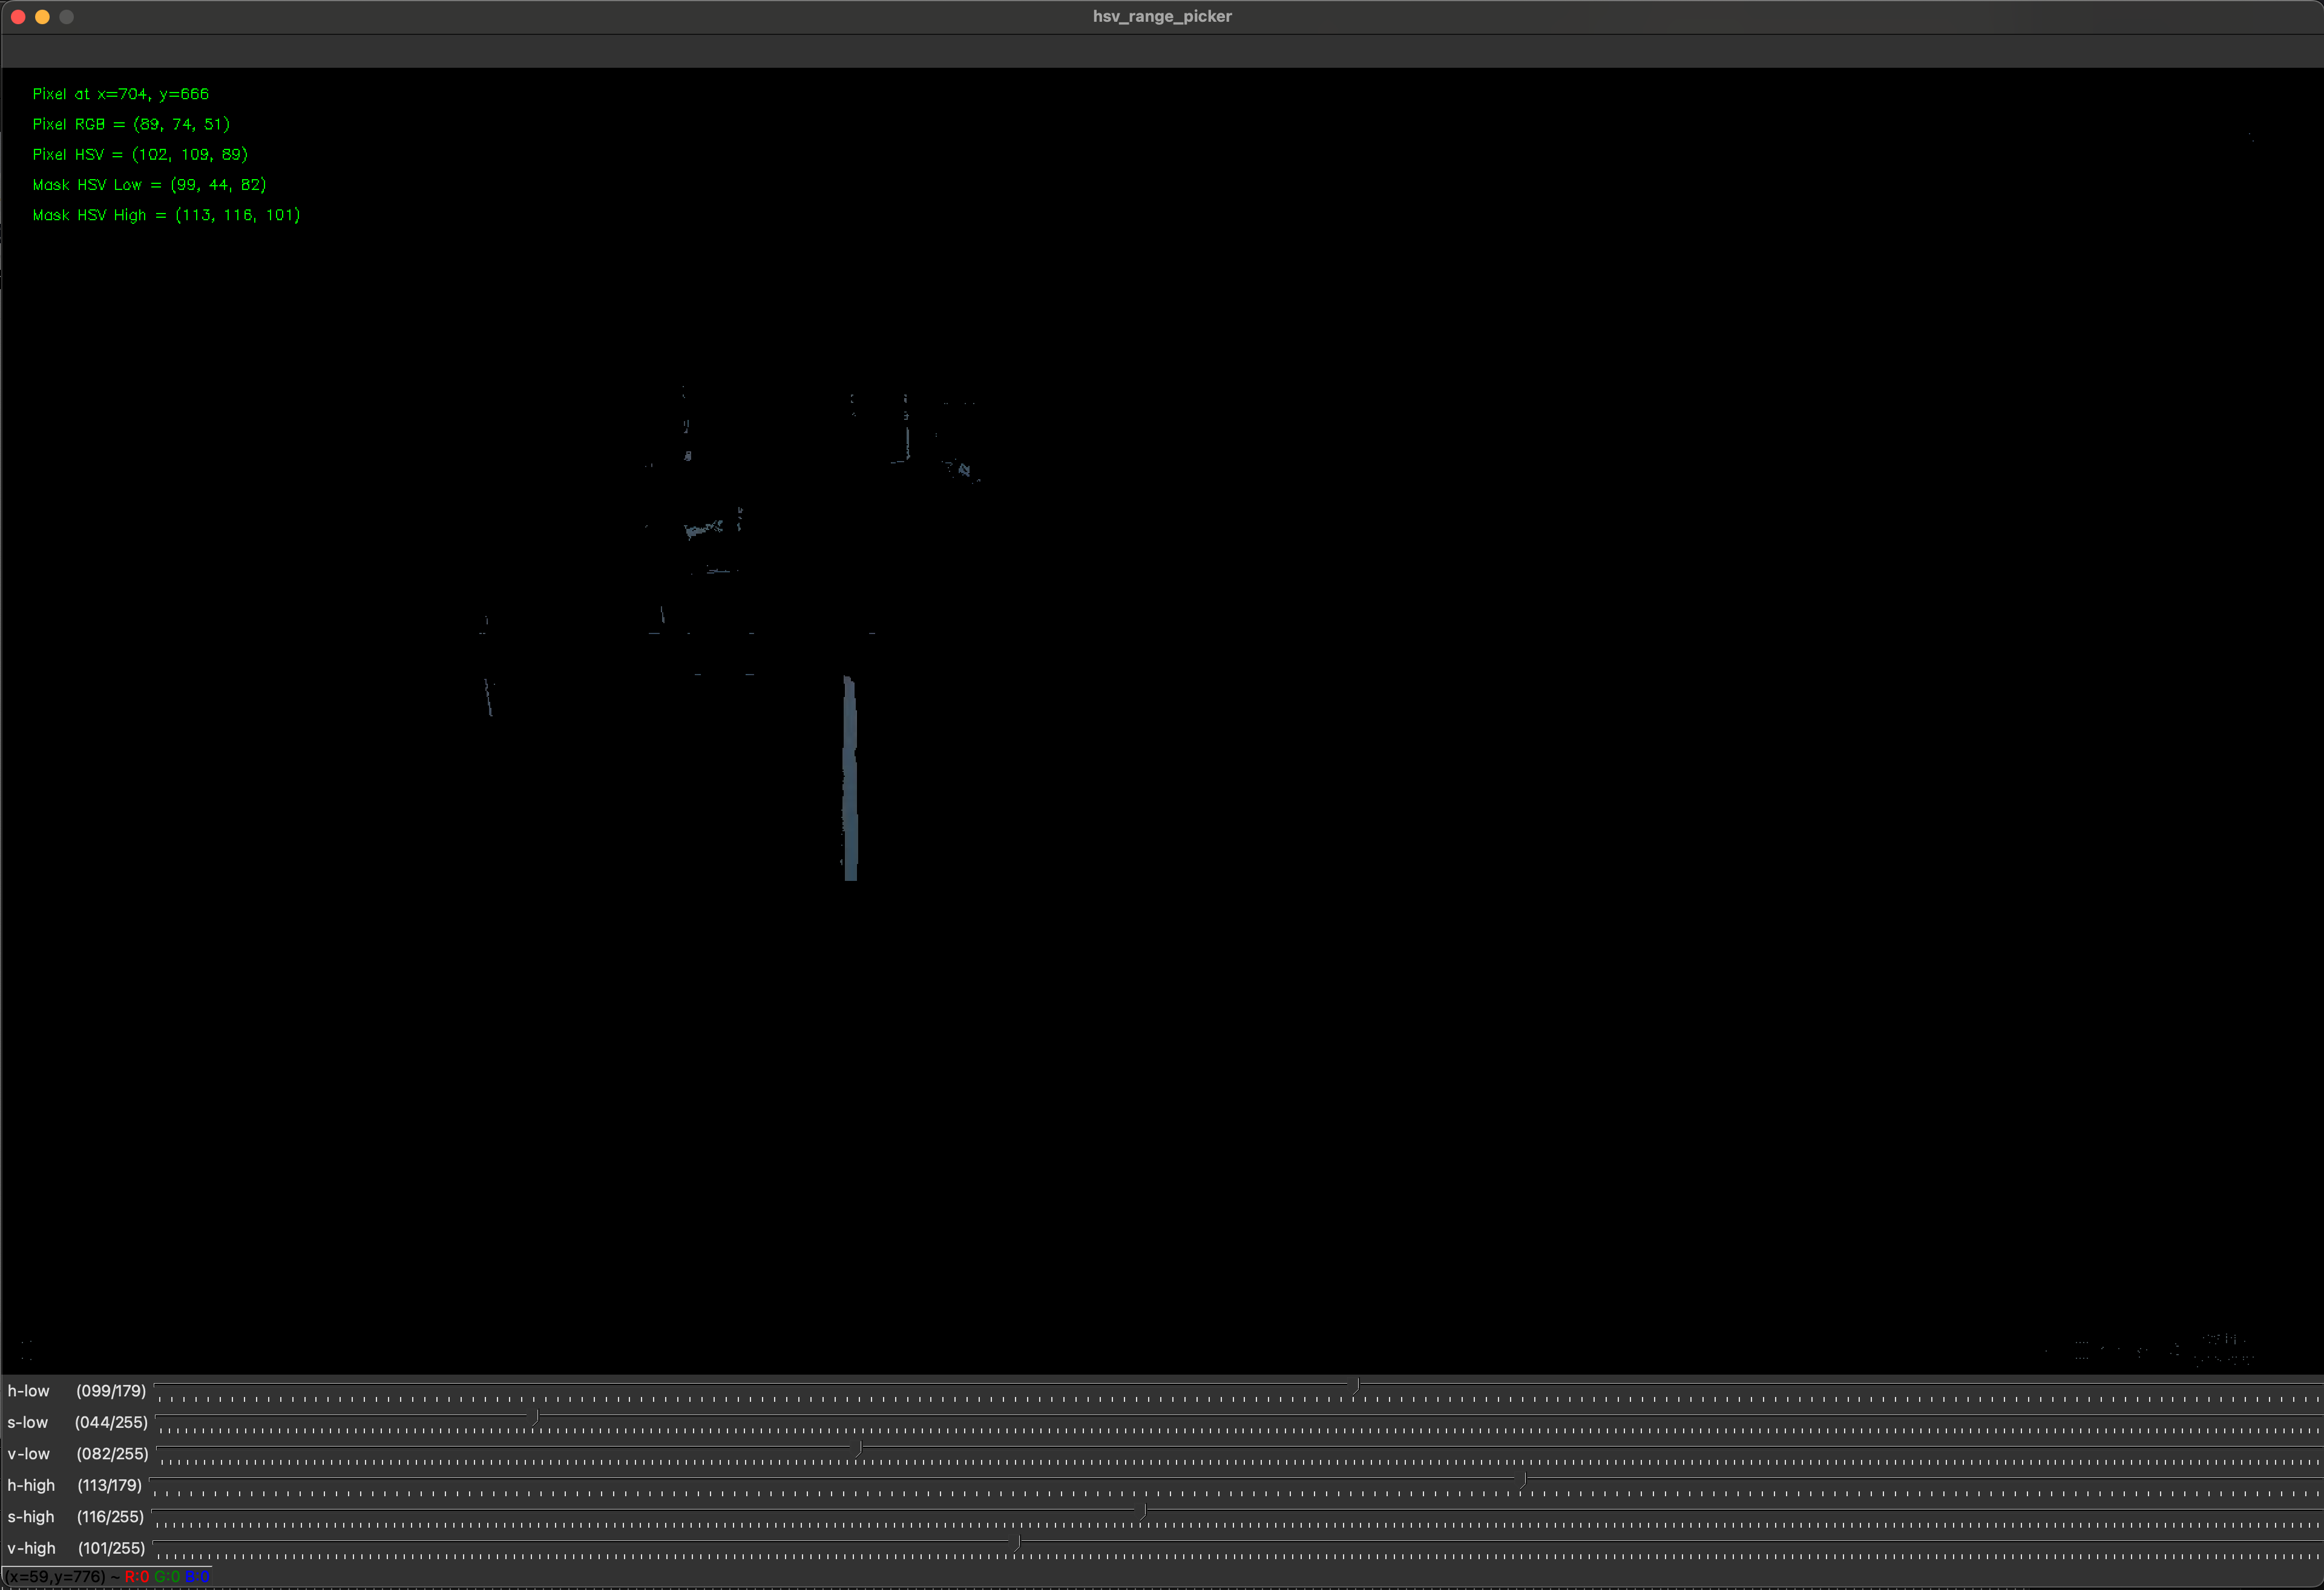 A masked screenshot in the hsv_picker.sh script